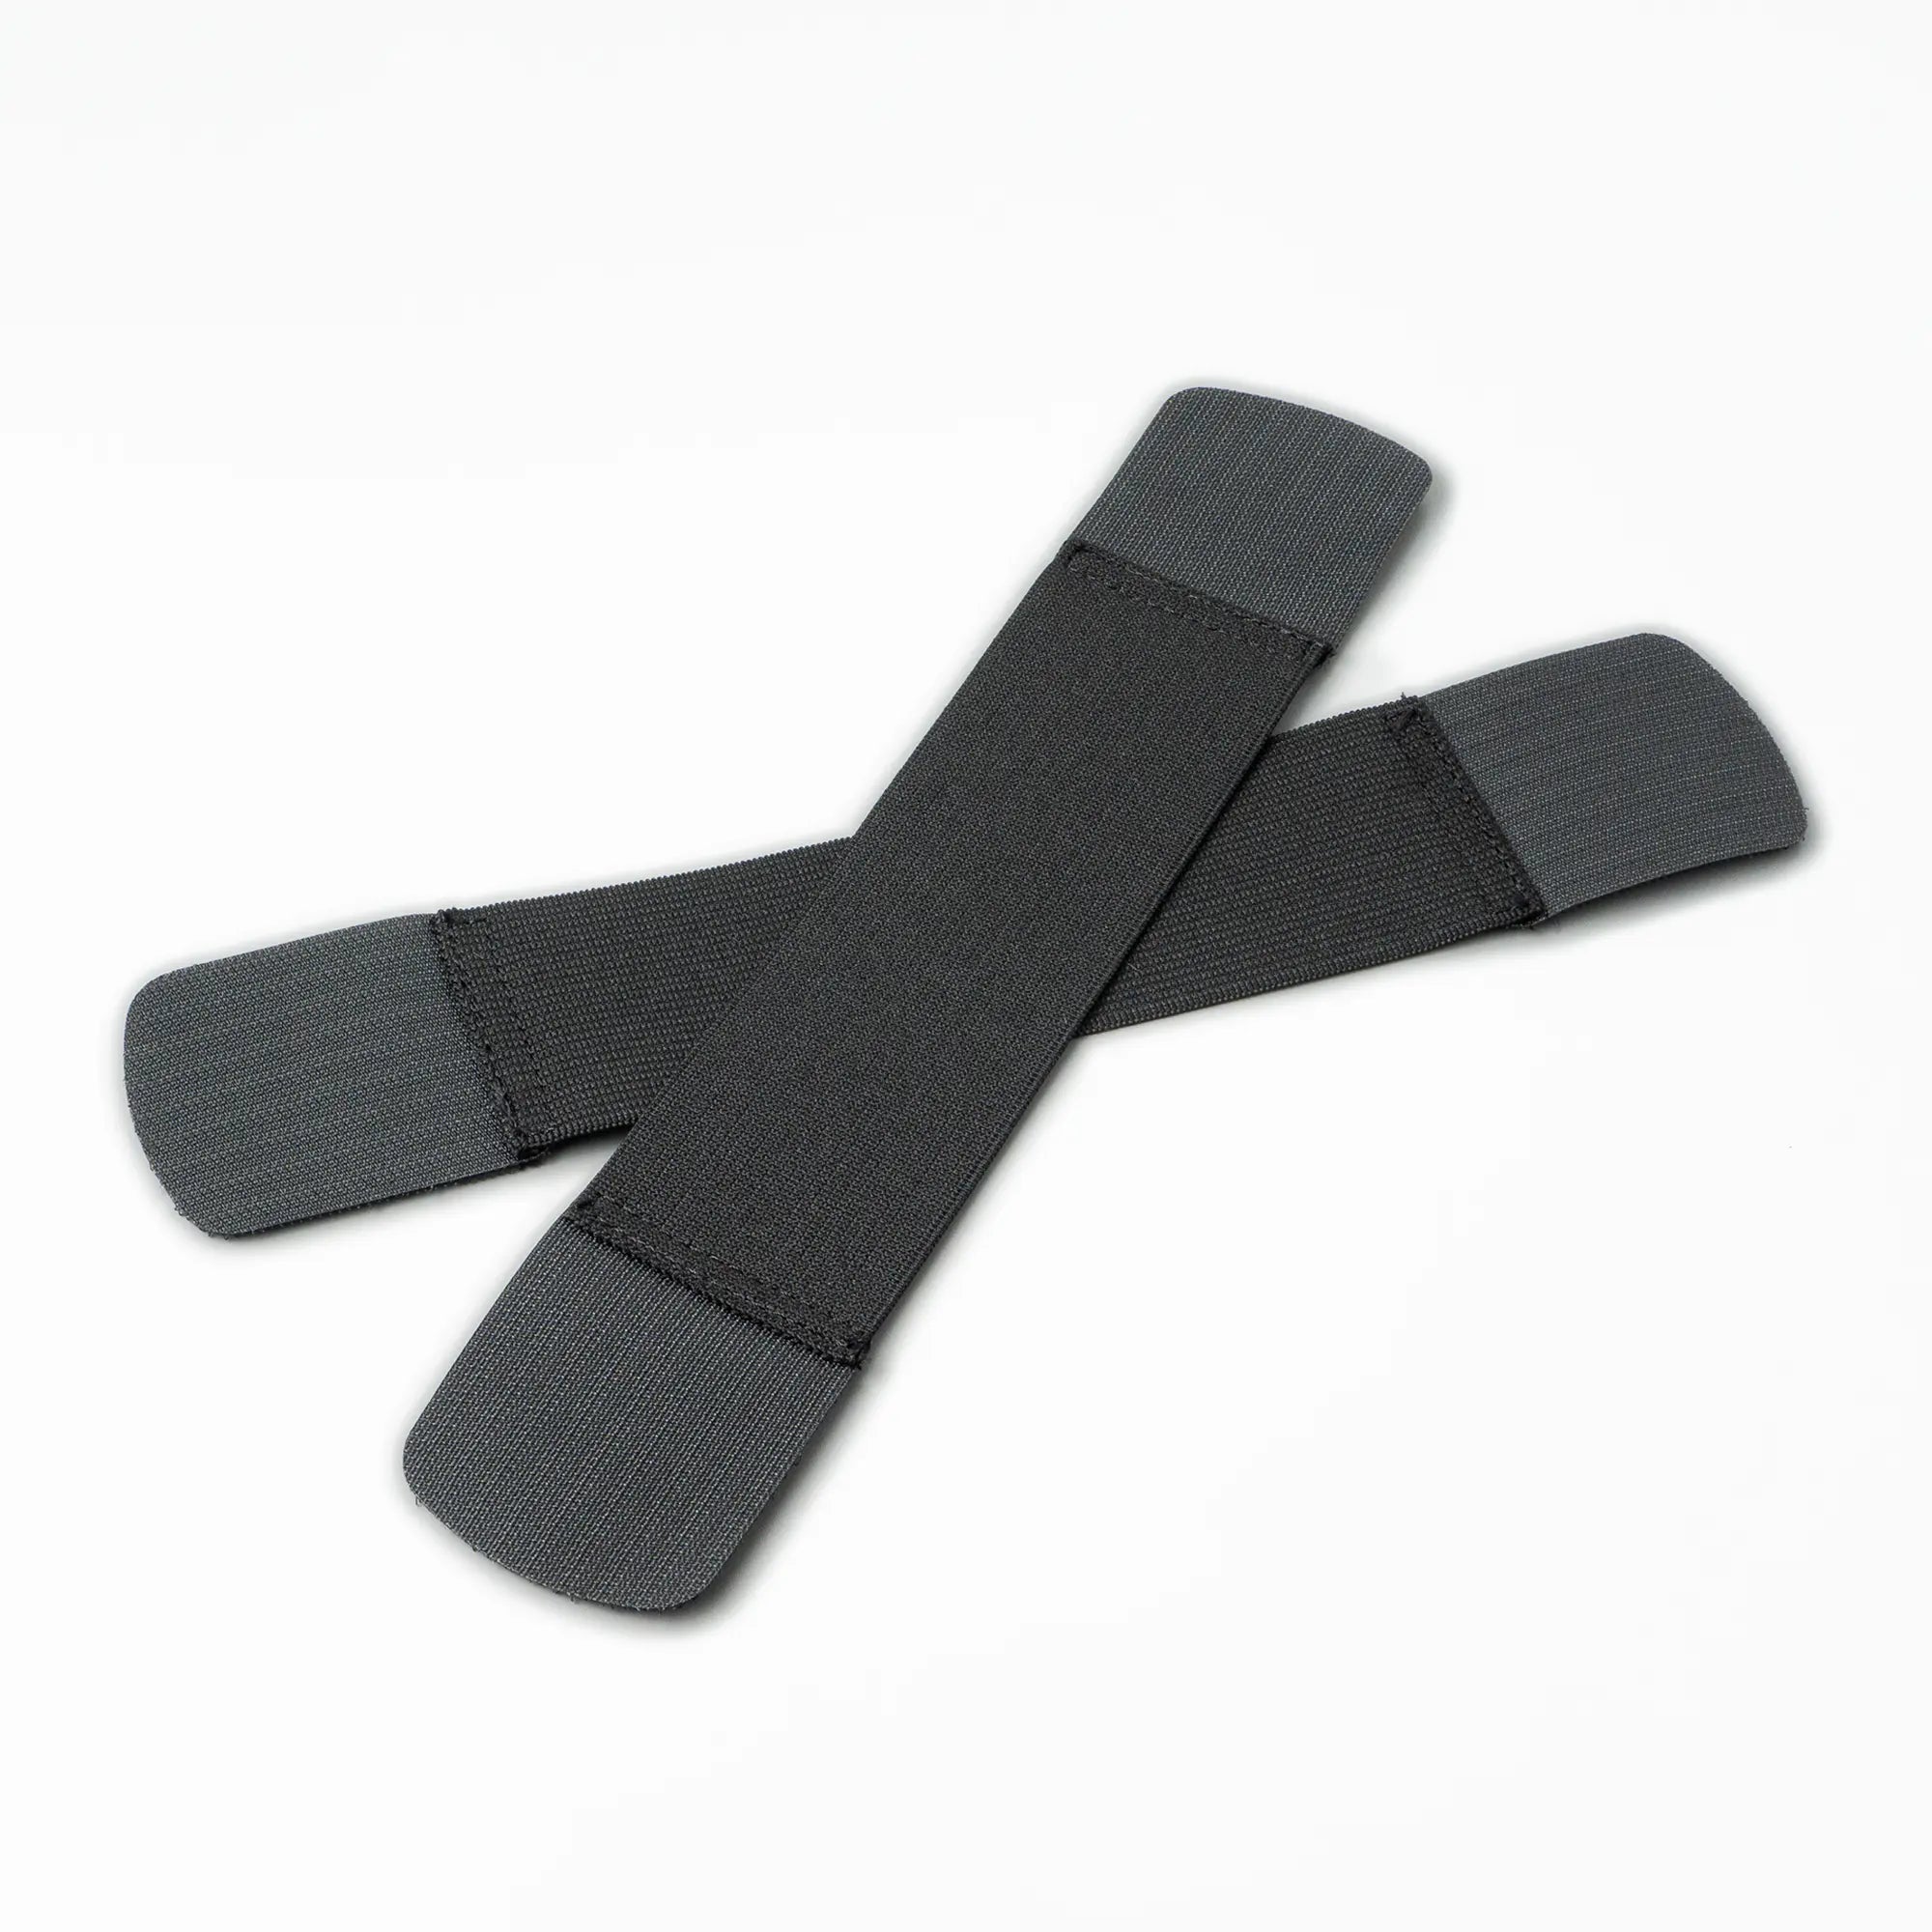 elastic velcro straps